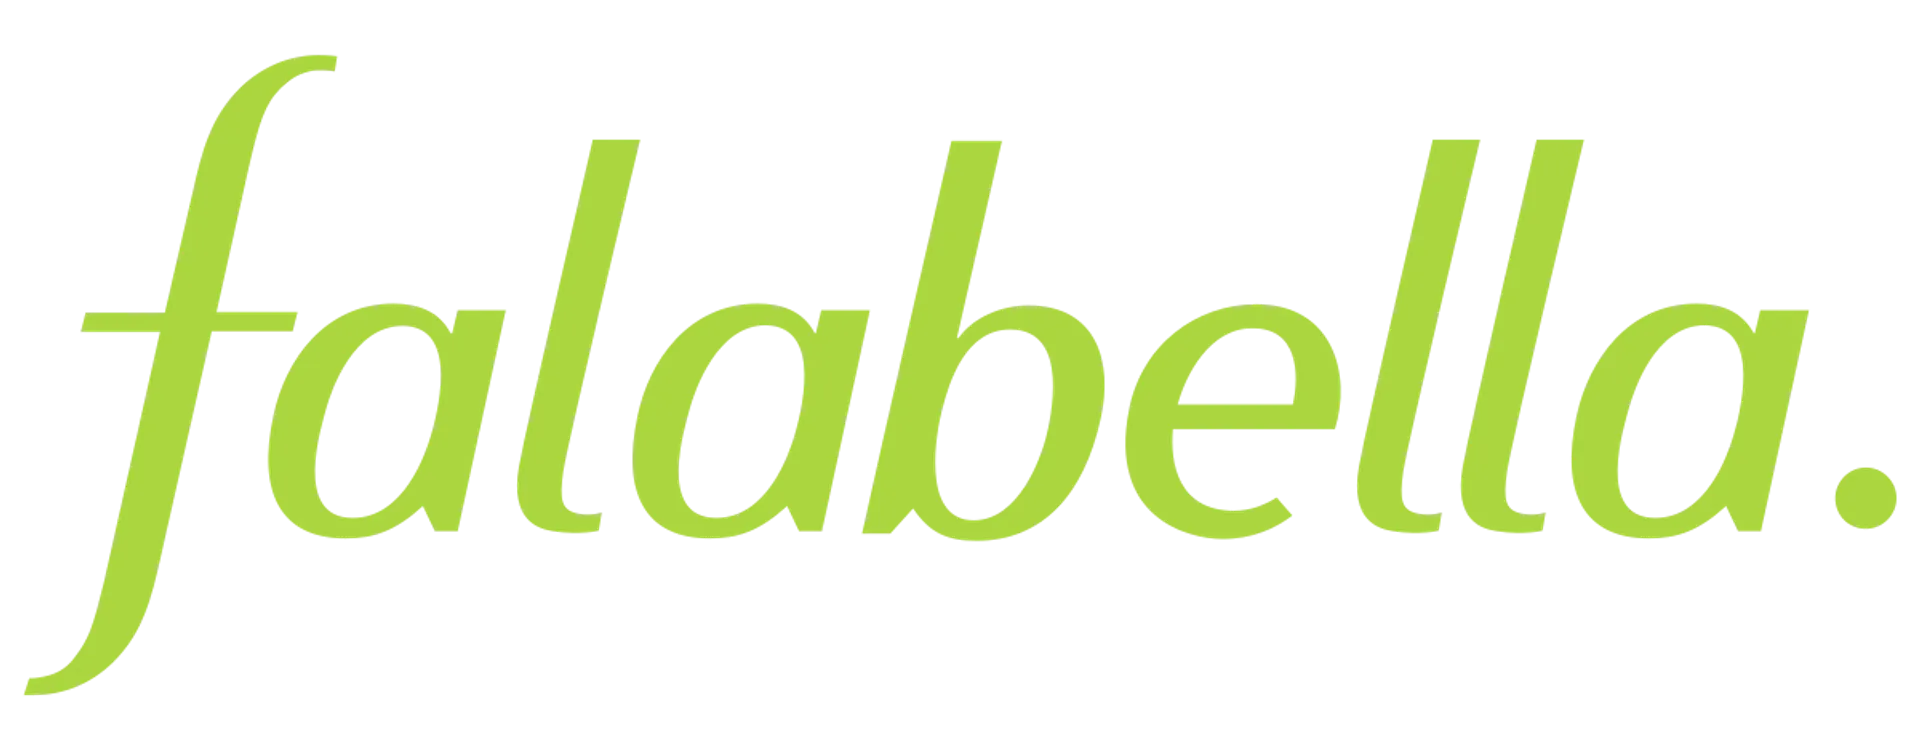 FALABELLA logo